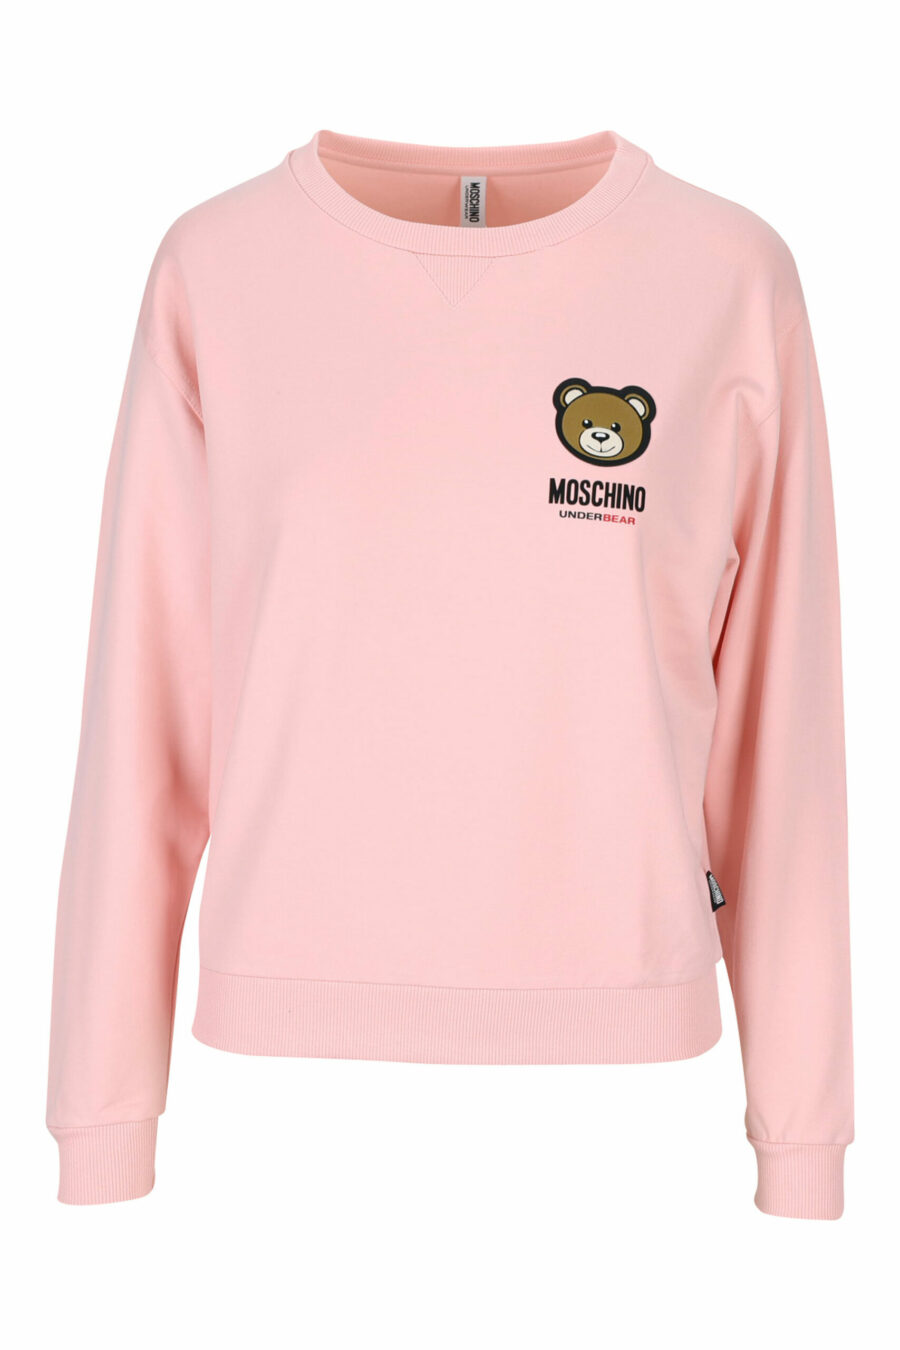 Sudadera rosa con logo en parche oso "underbear" - 889316618365 scaled